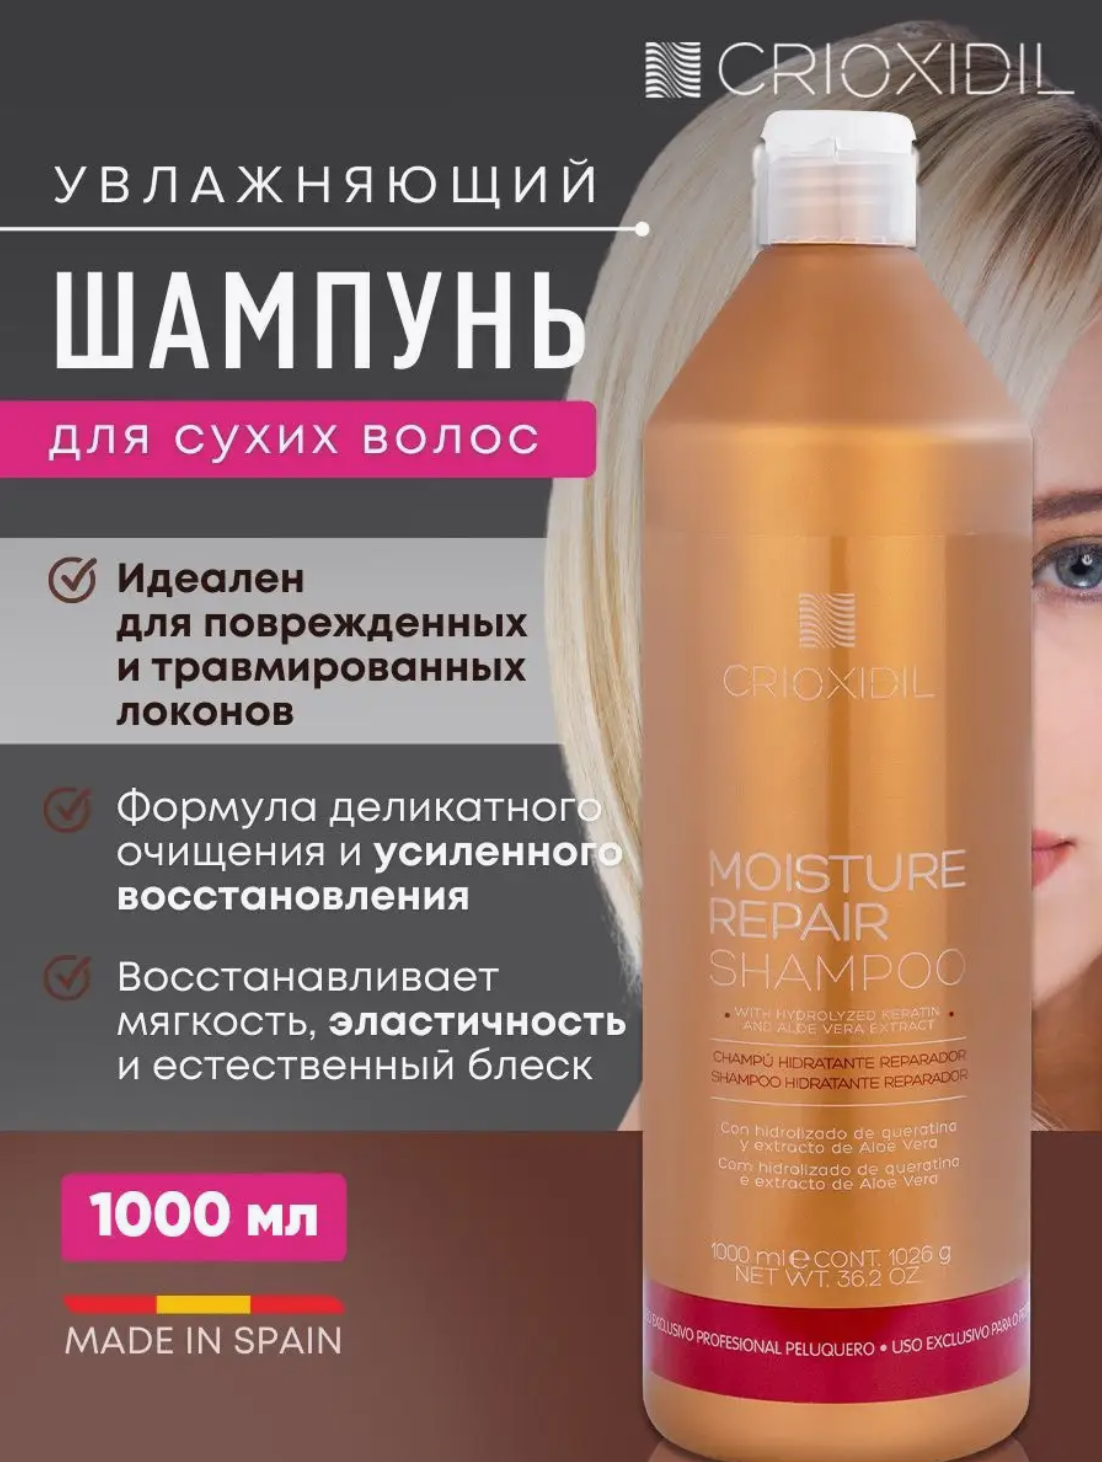 Шампунь для сухих и поврежденных волос увлажняющий, Crioxidil Moisture Repair Shampoo by Salerm Cosmetics, 1000 мл